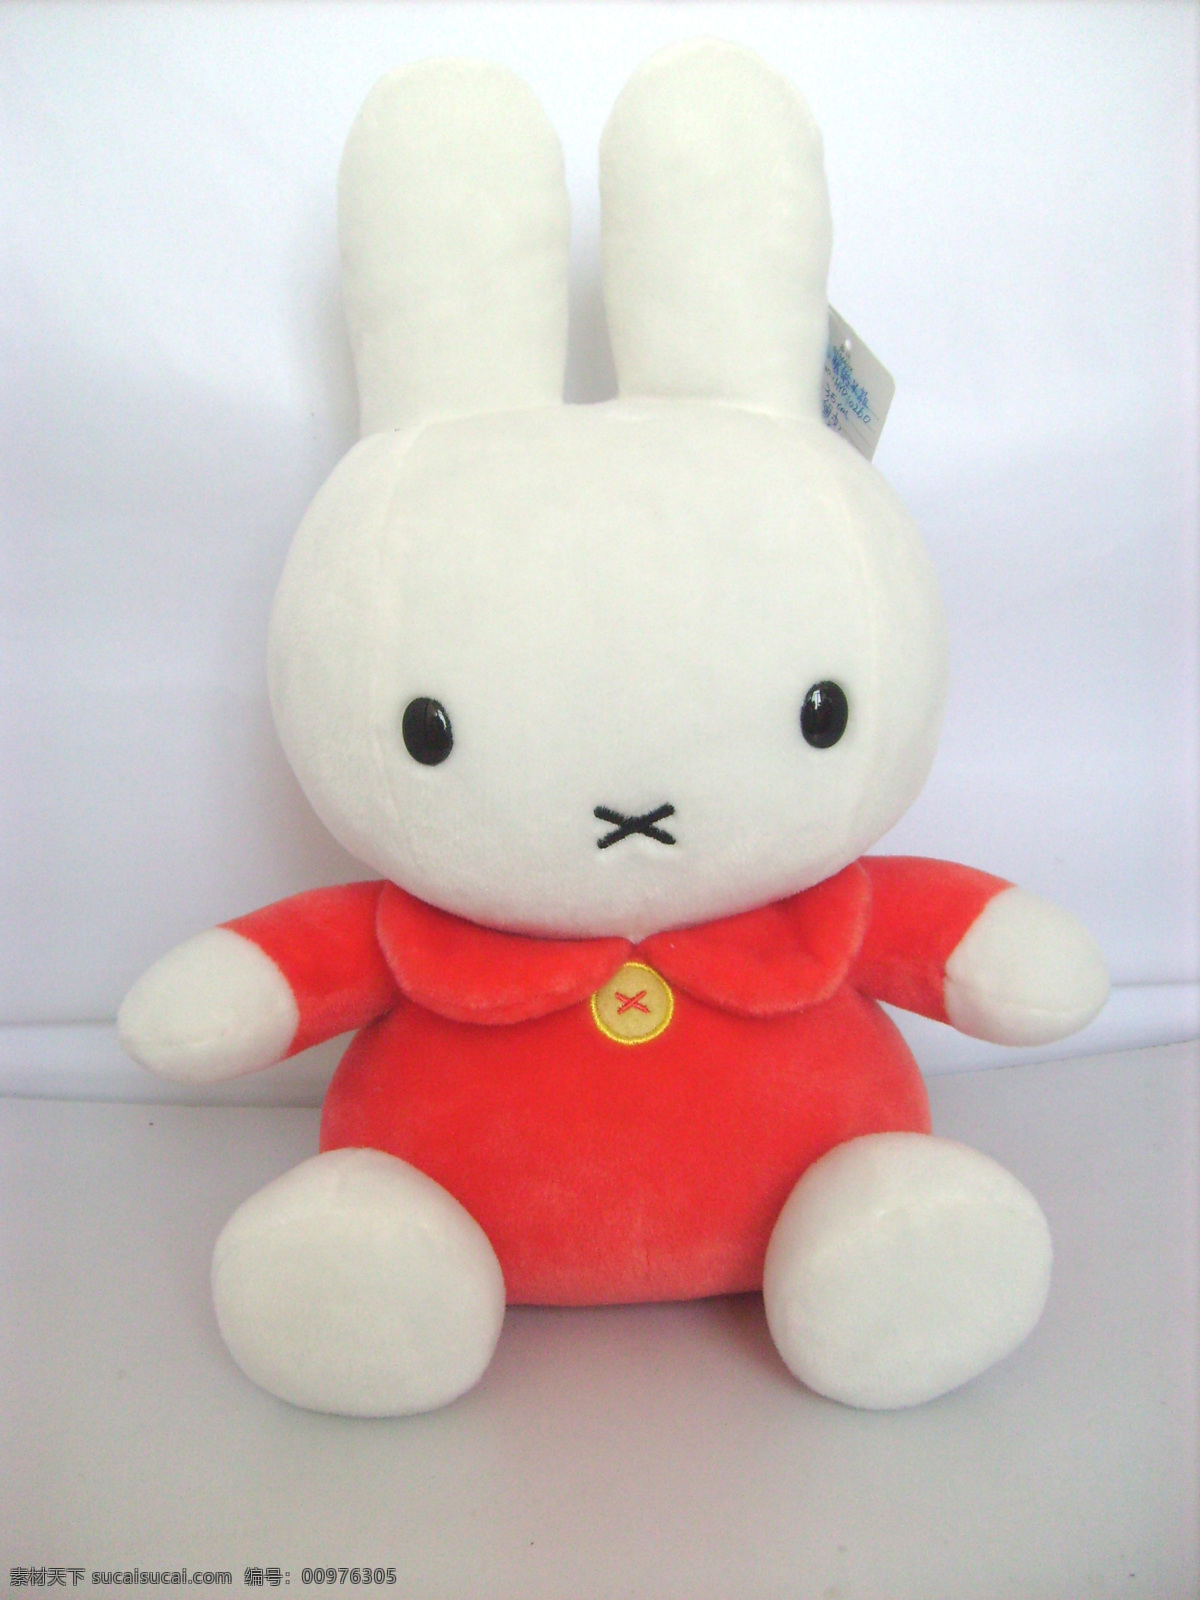 米 菲 兔 毛绒玩具 生活百科 生活素材 米菲兔 矢量图 日常生活